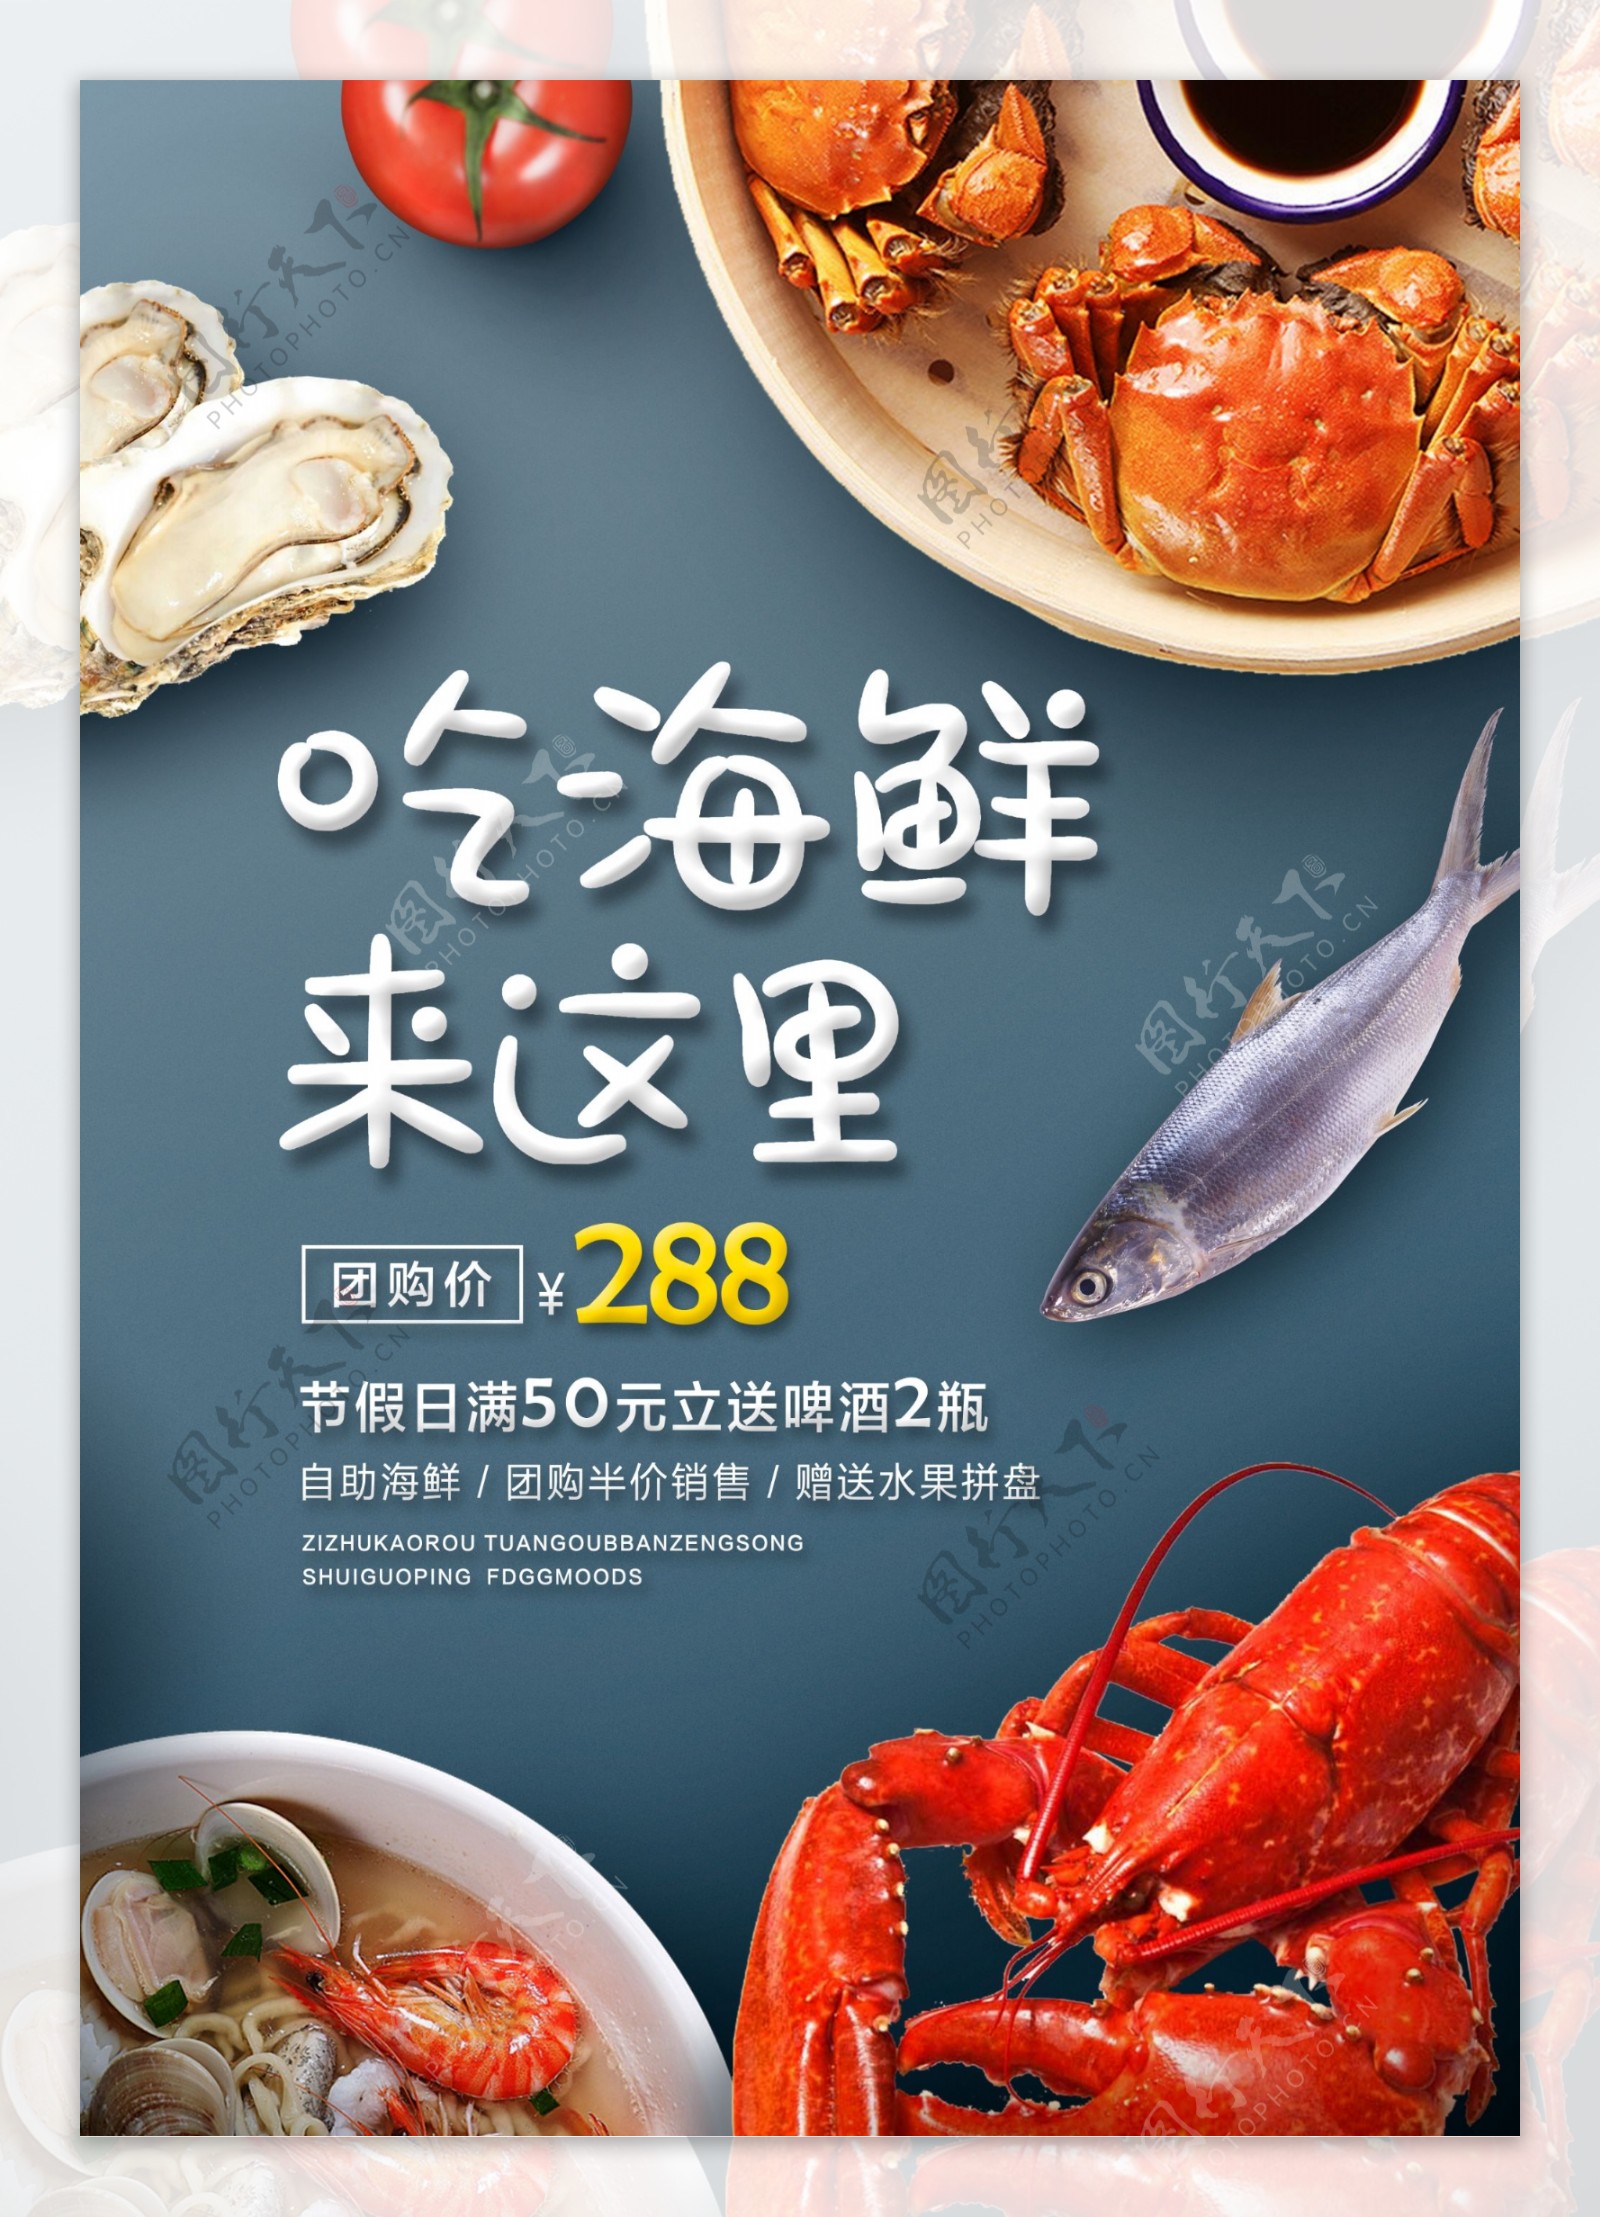 海鲜美食活动促销宣传海报